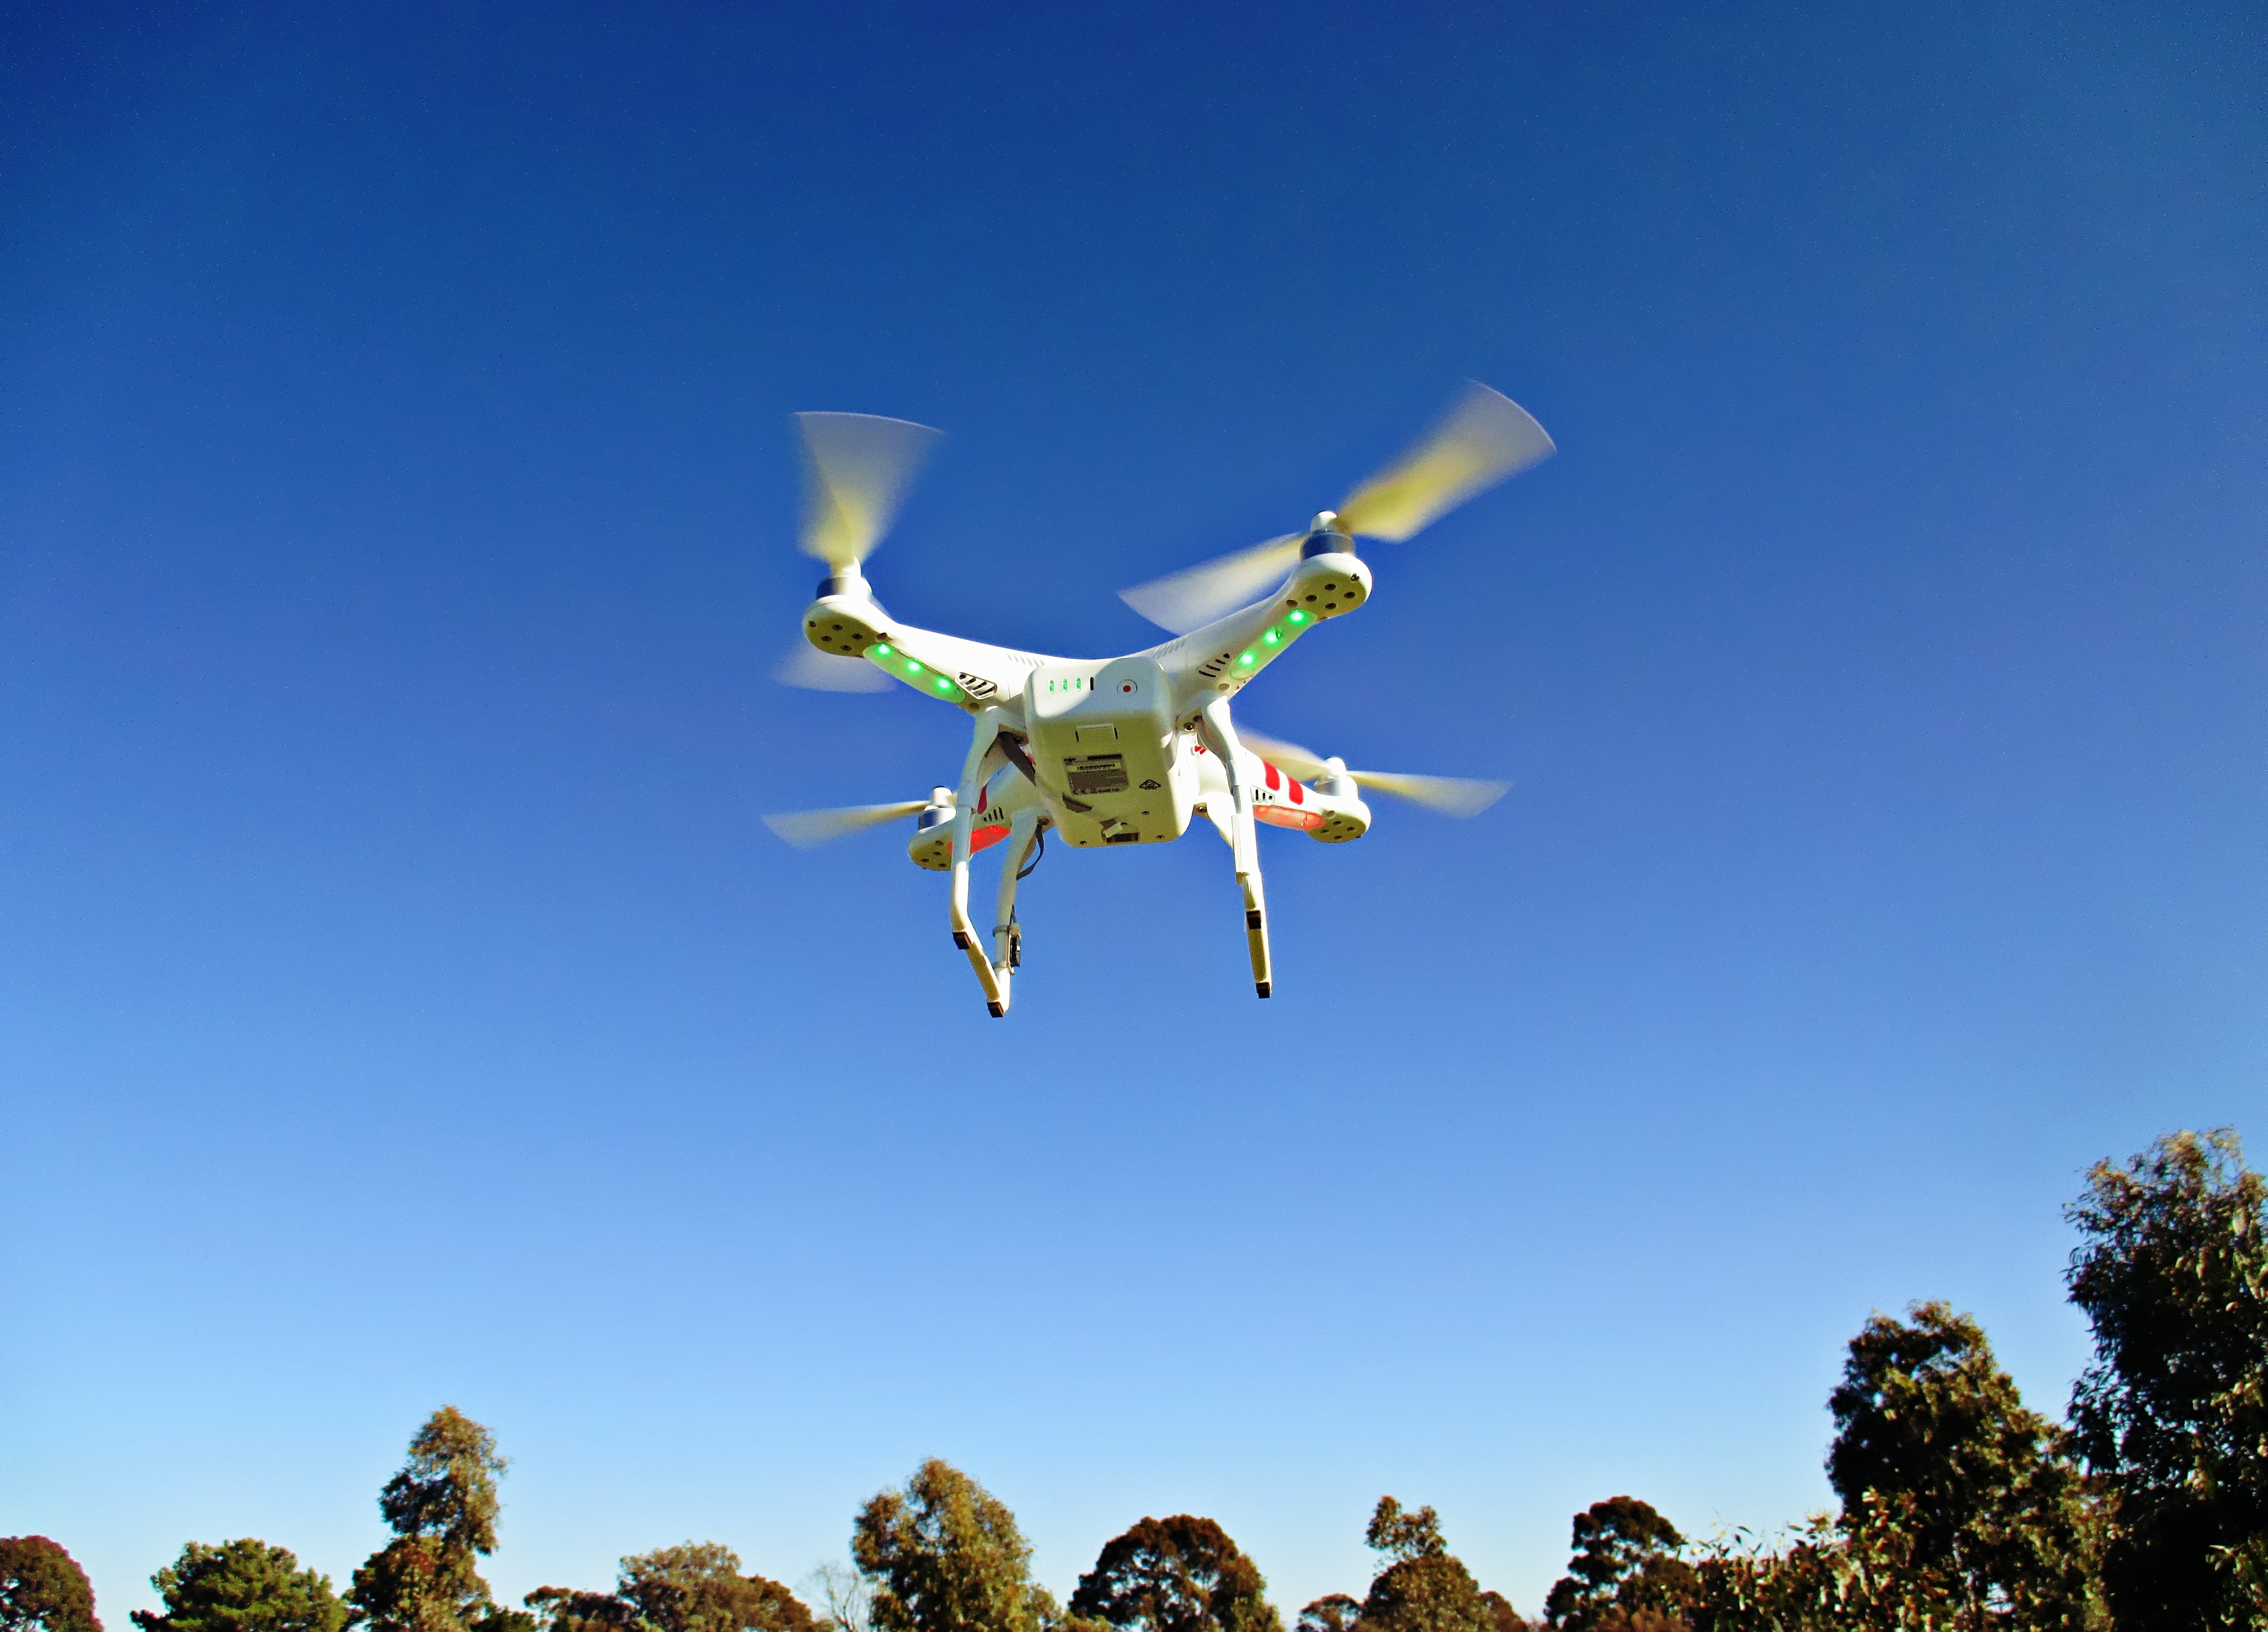 white quad copter drone